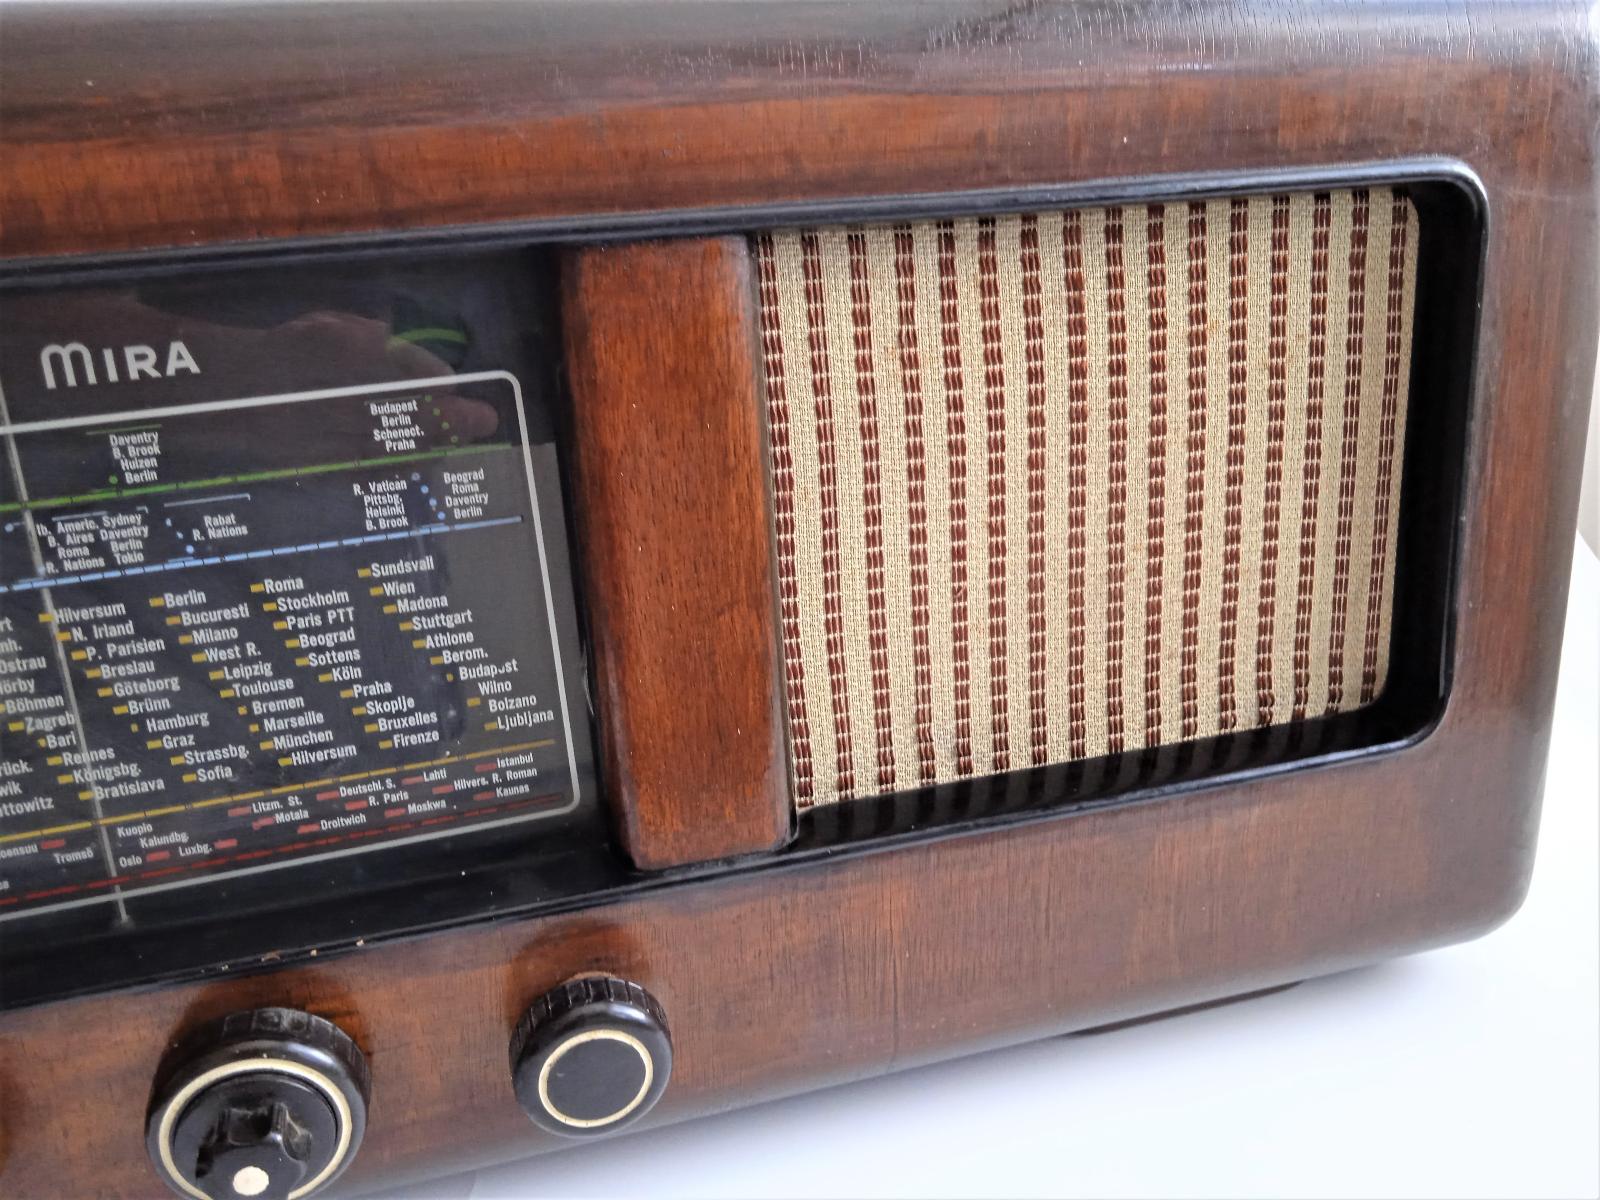 Rádio "Mira" type MS243W - Starožitnosti